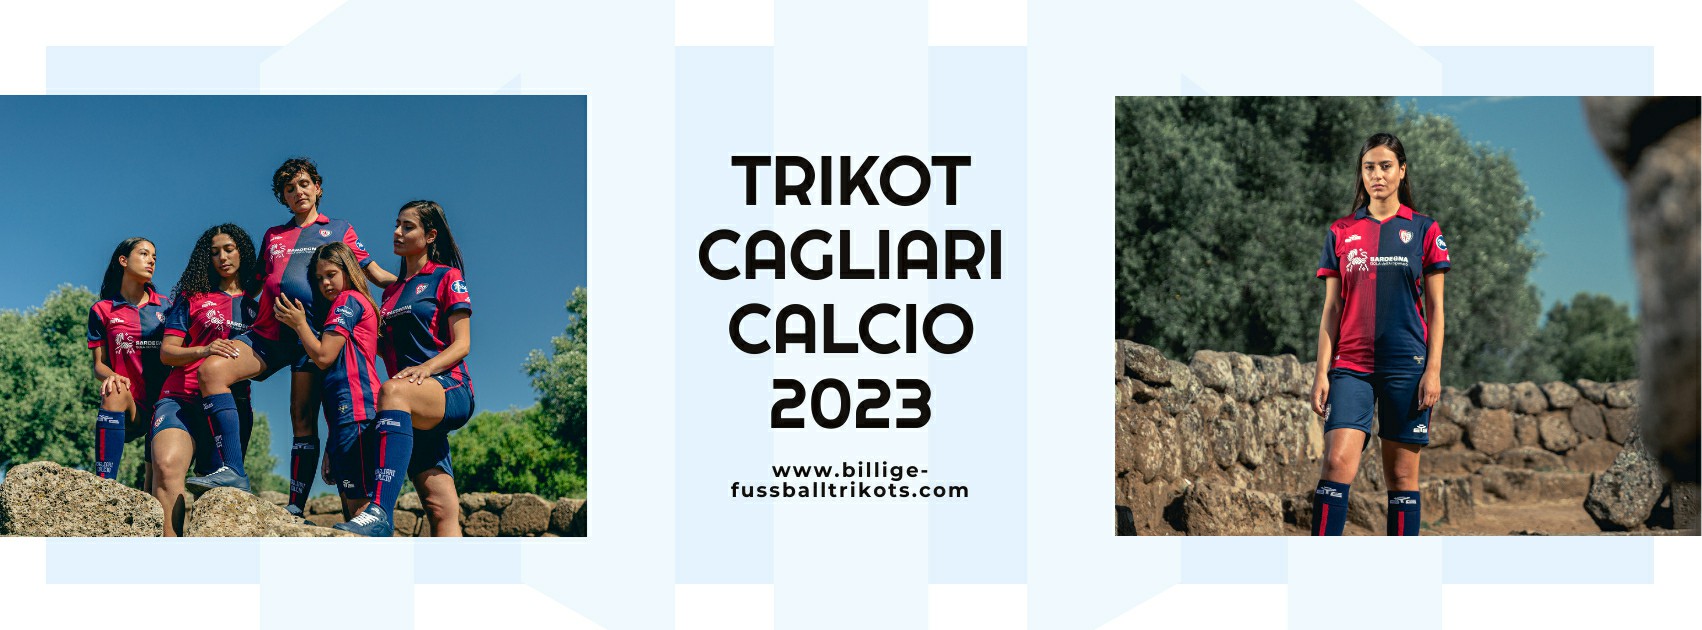 Cagliari Calcio Trikot 2023-2024